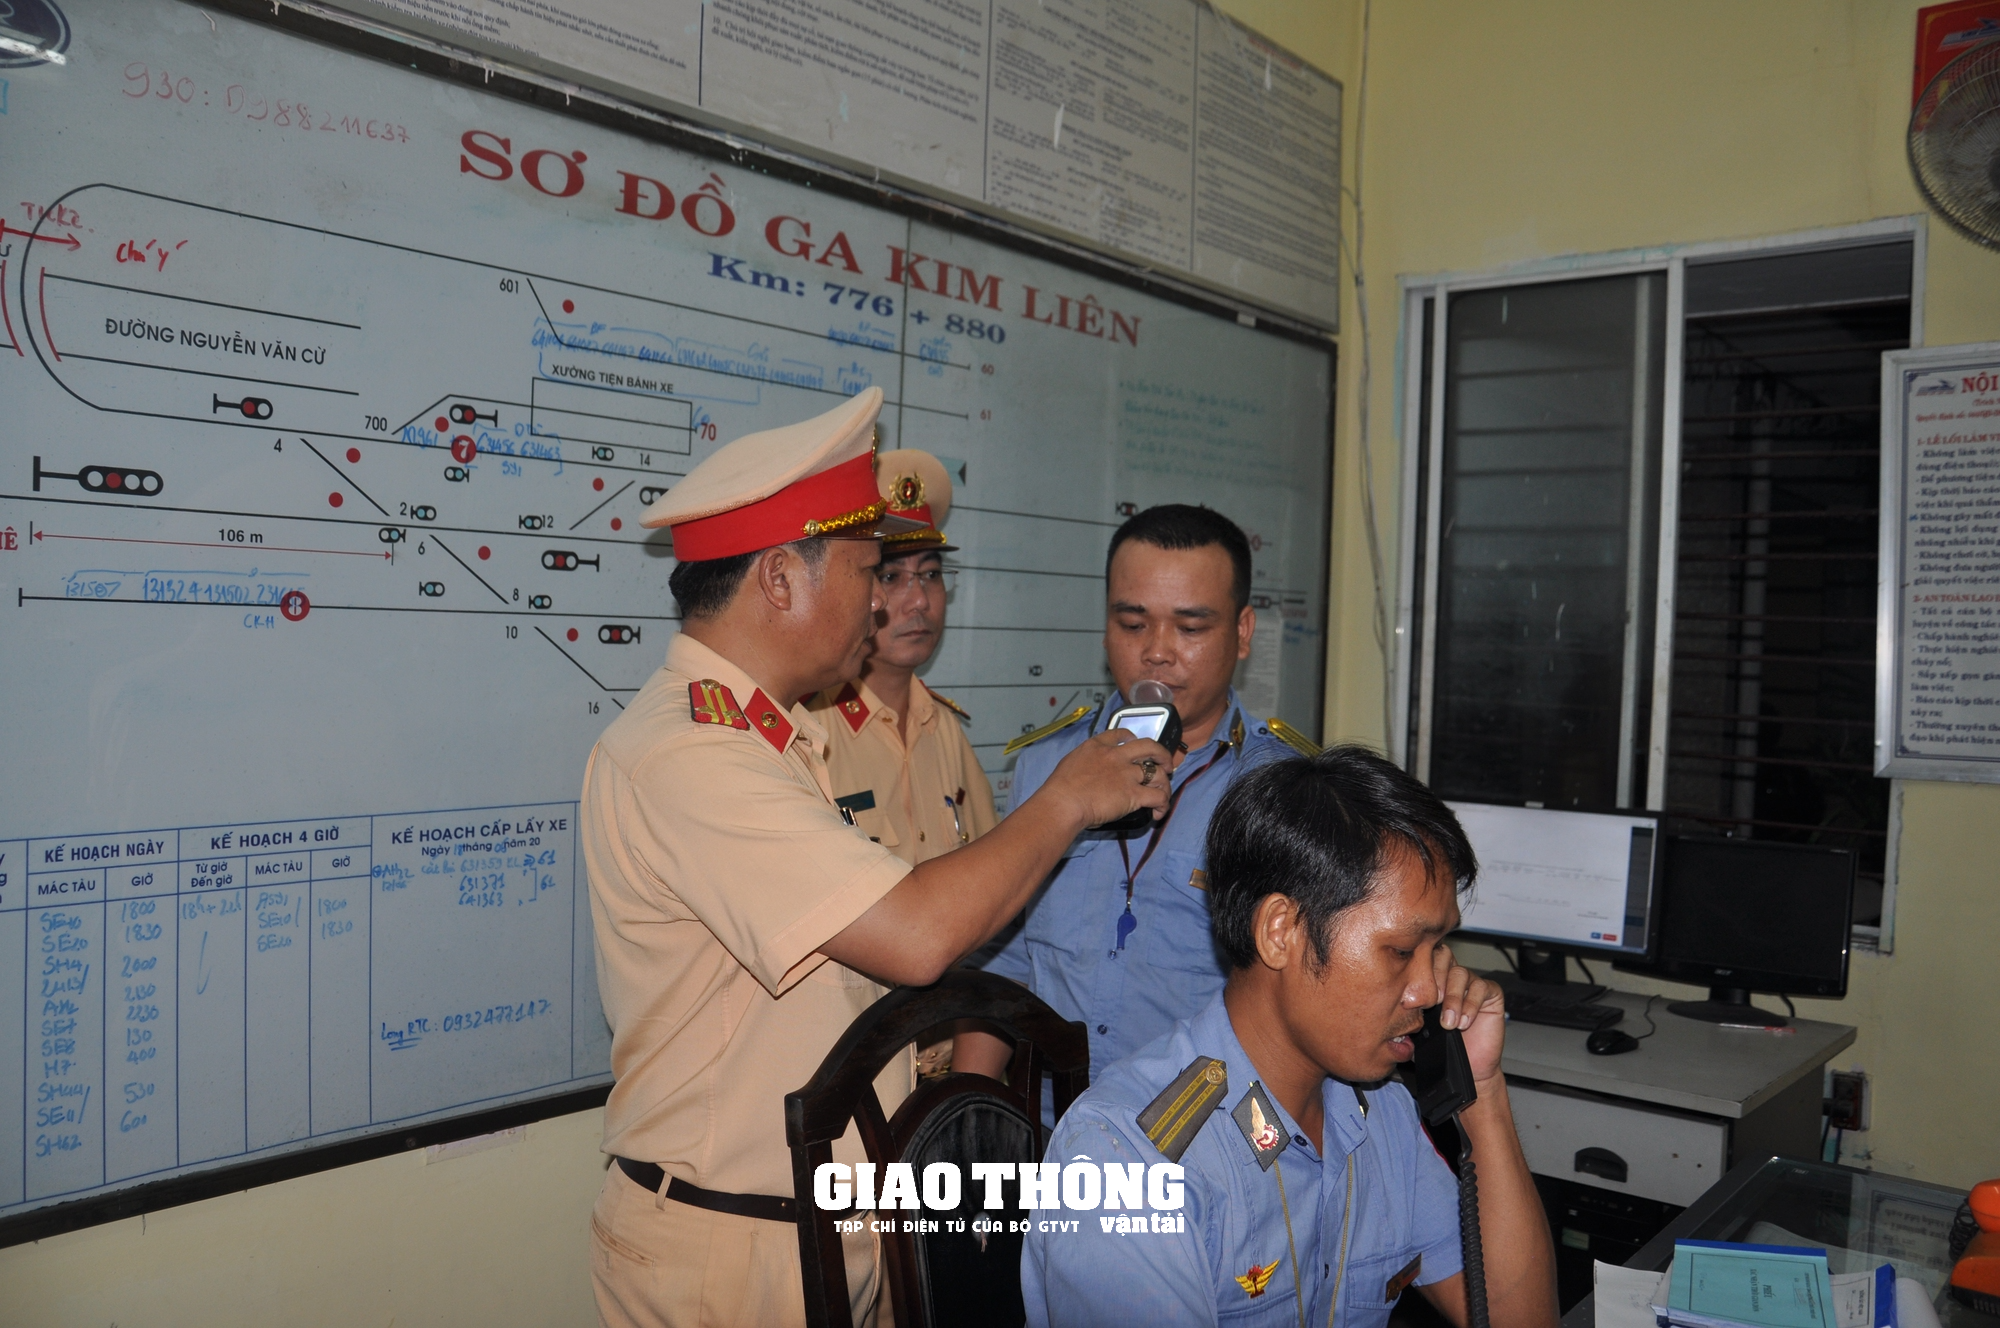 CSGT xuyên ngày đêm kiểm tra nồng độ cồn, ma túy nhân viên đường sắt ở Đà Nẵng - Ảnh 1.